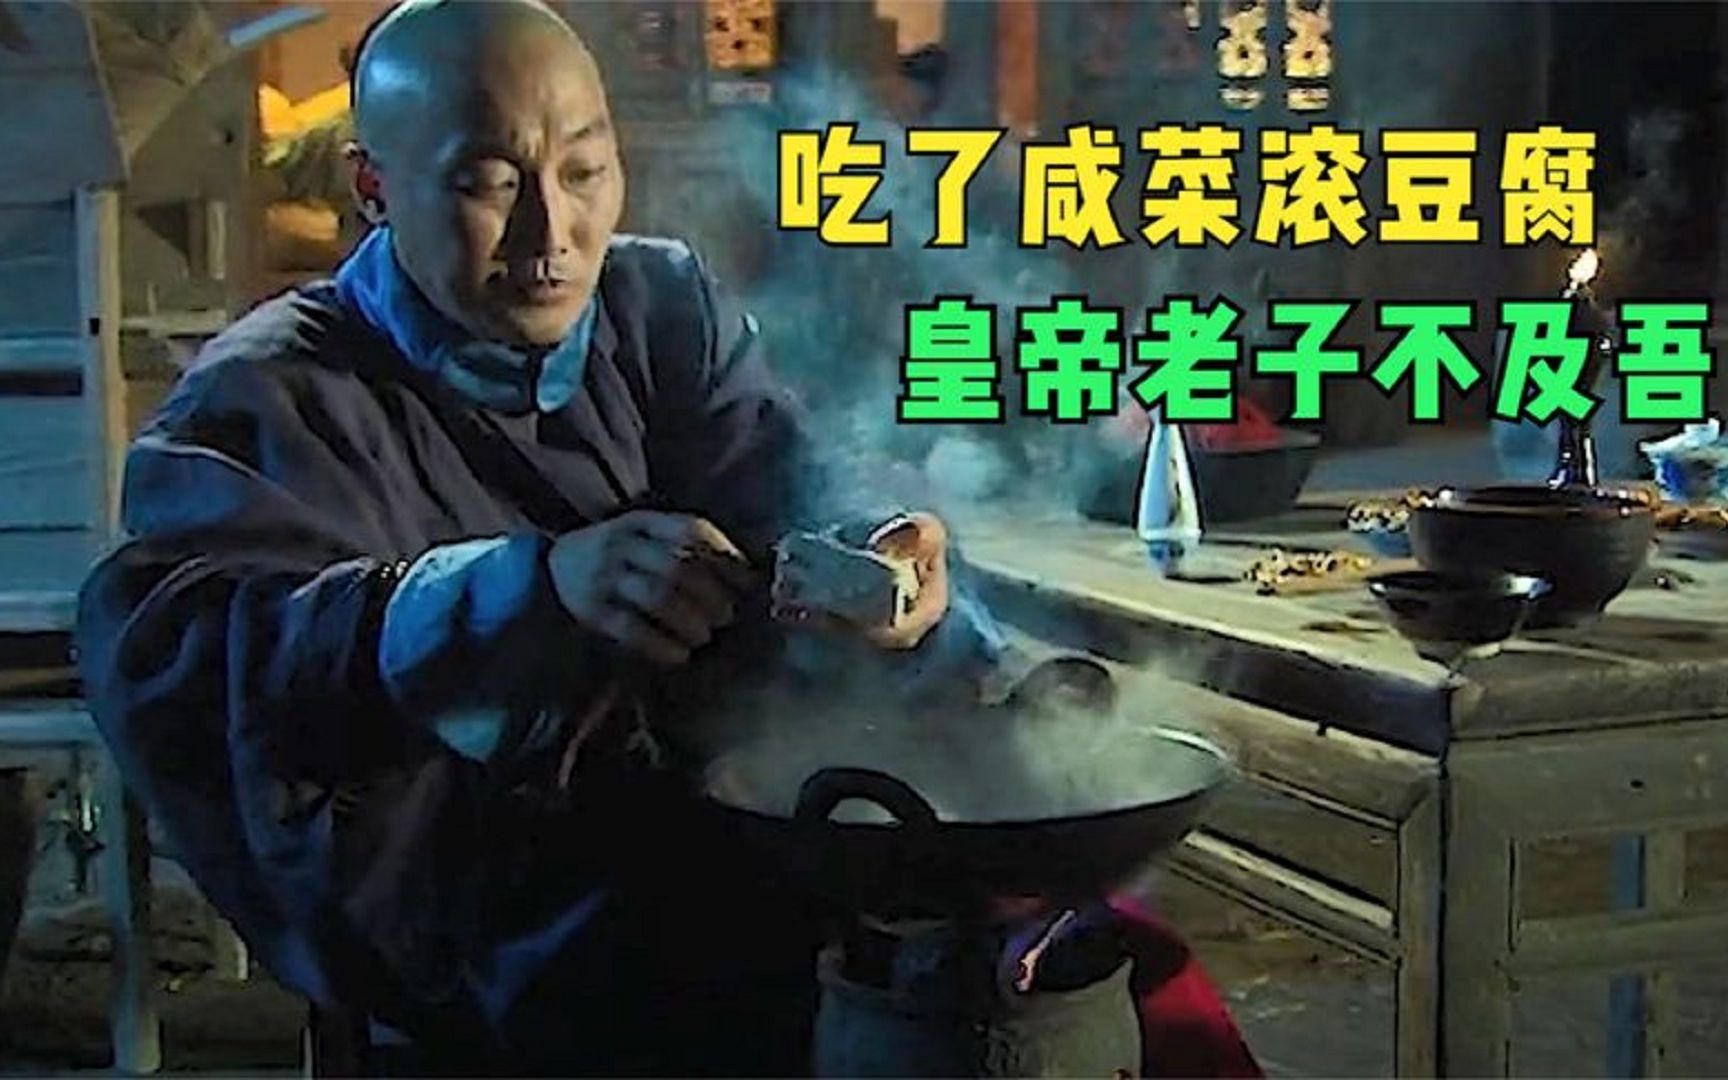 新泰牛肉豆腐王图片